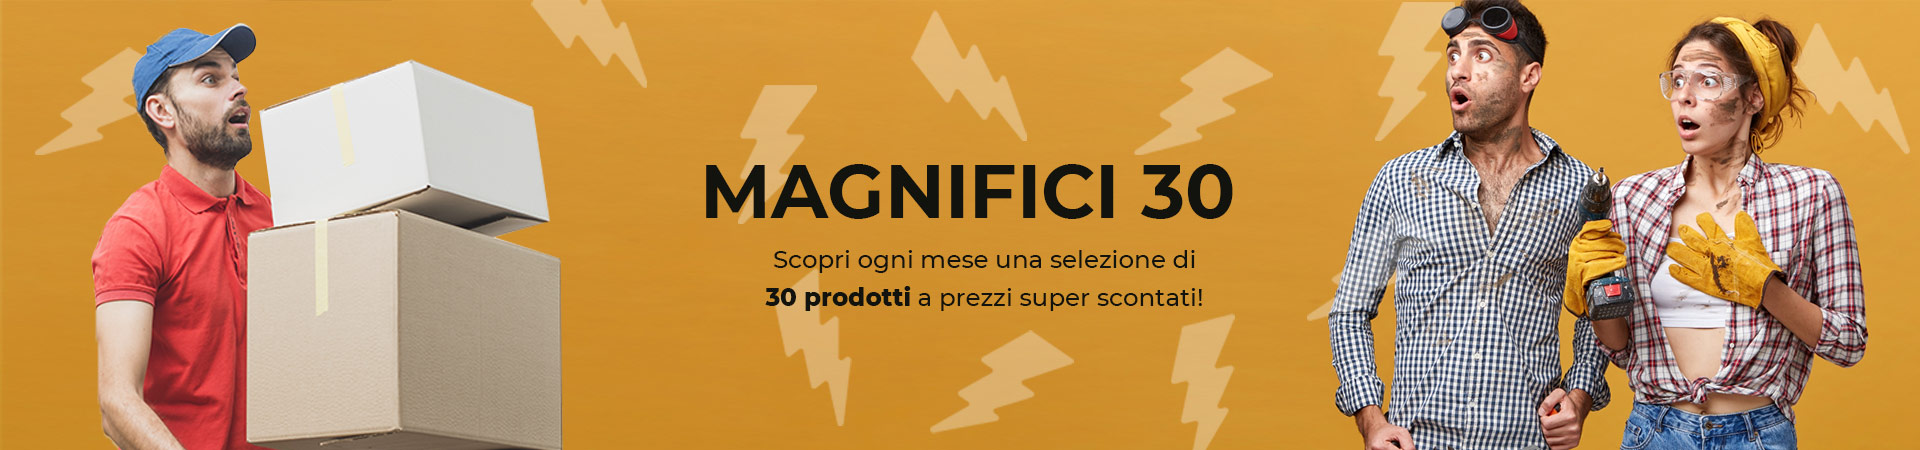 i-magnifici-30-header